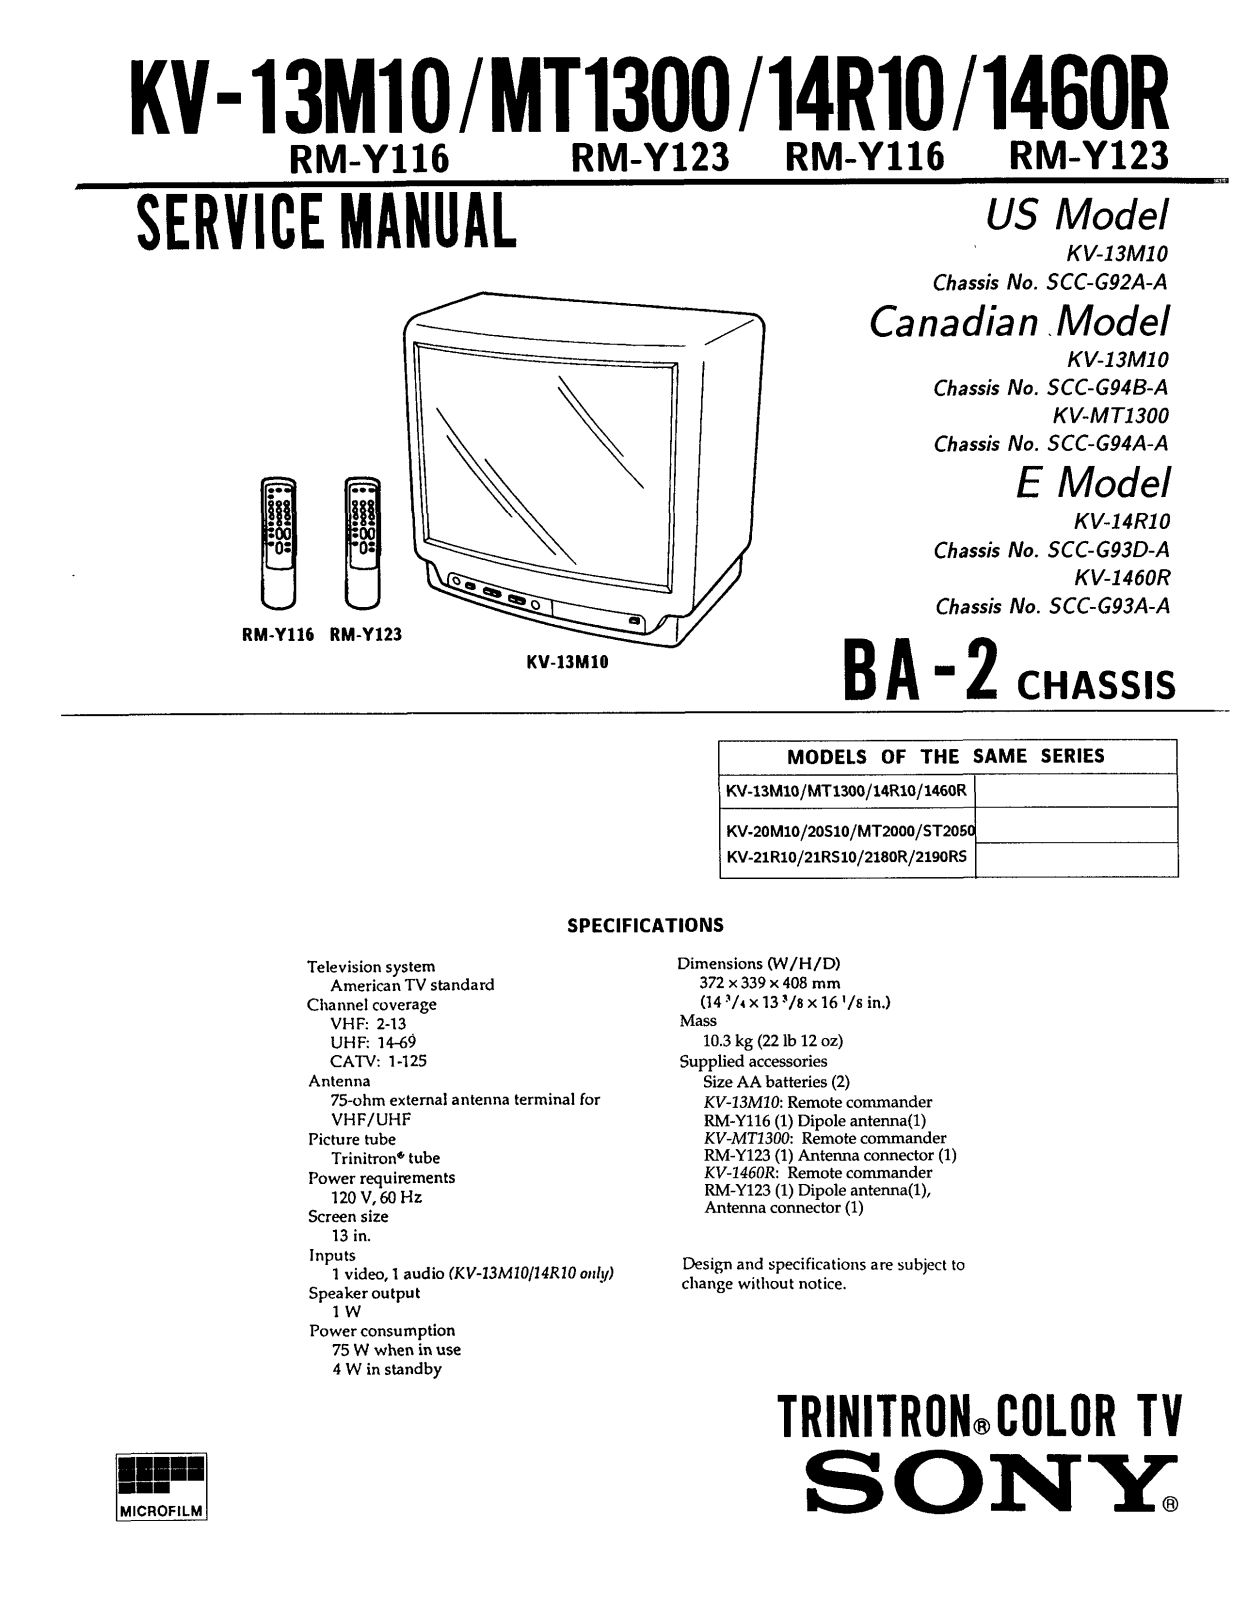 SONY KV-1401, KV-1421, KV-1451, KV-1400, KV-2100 Service Manual